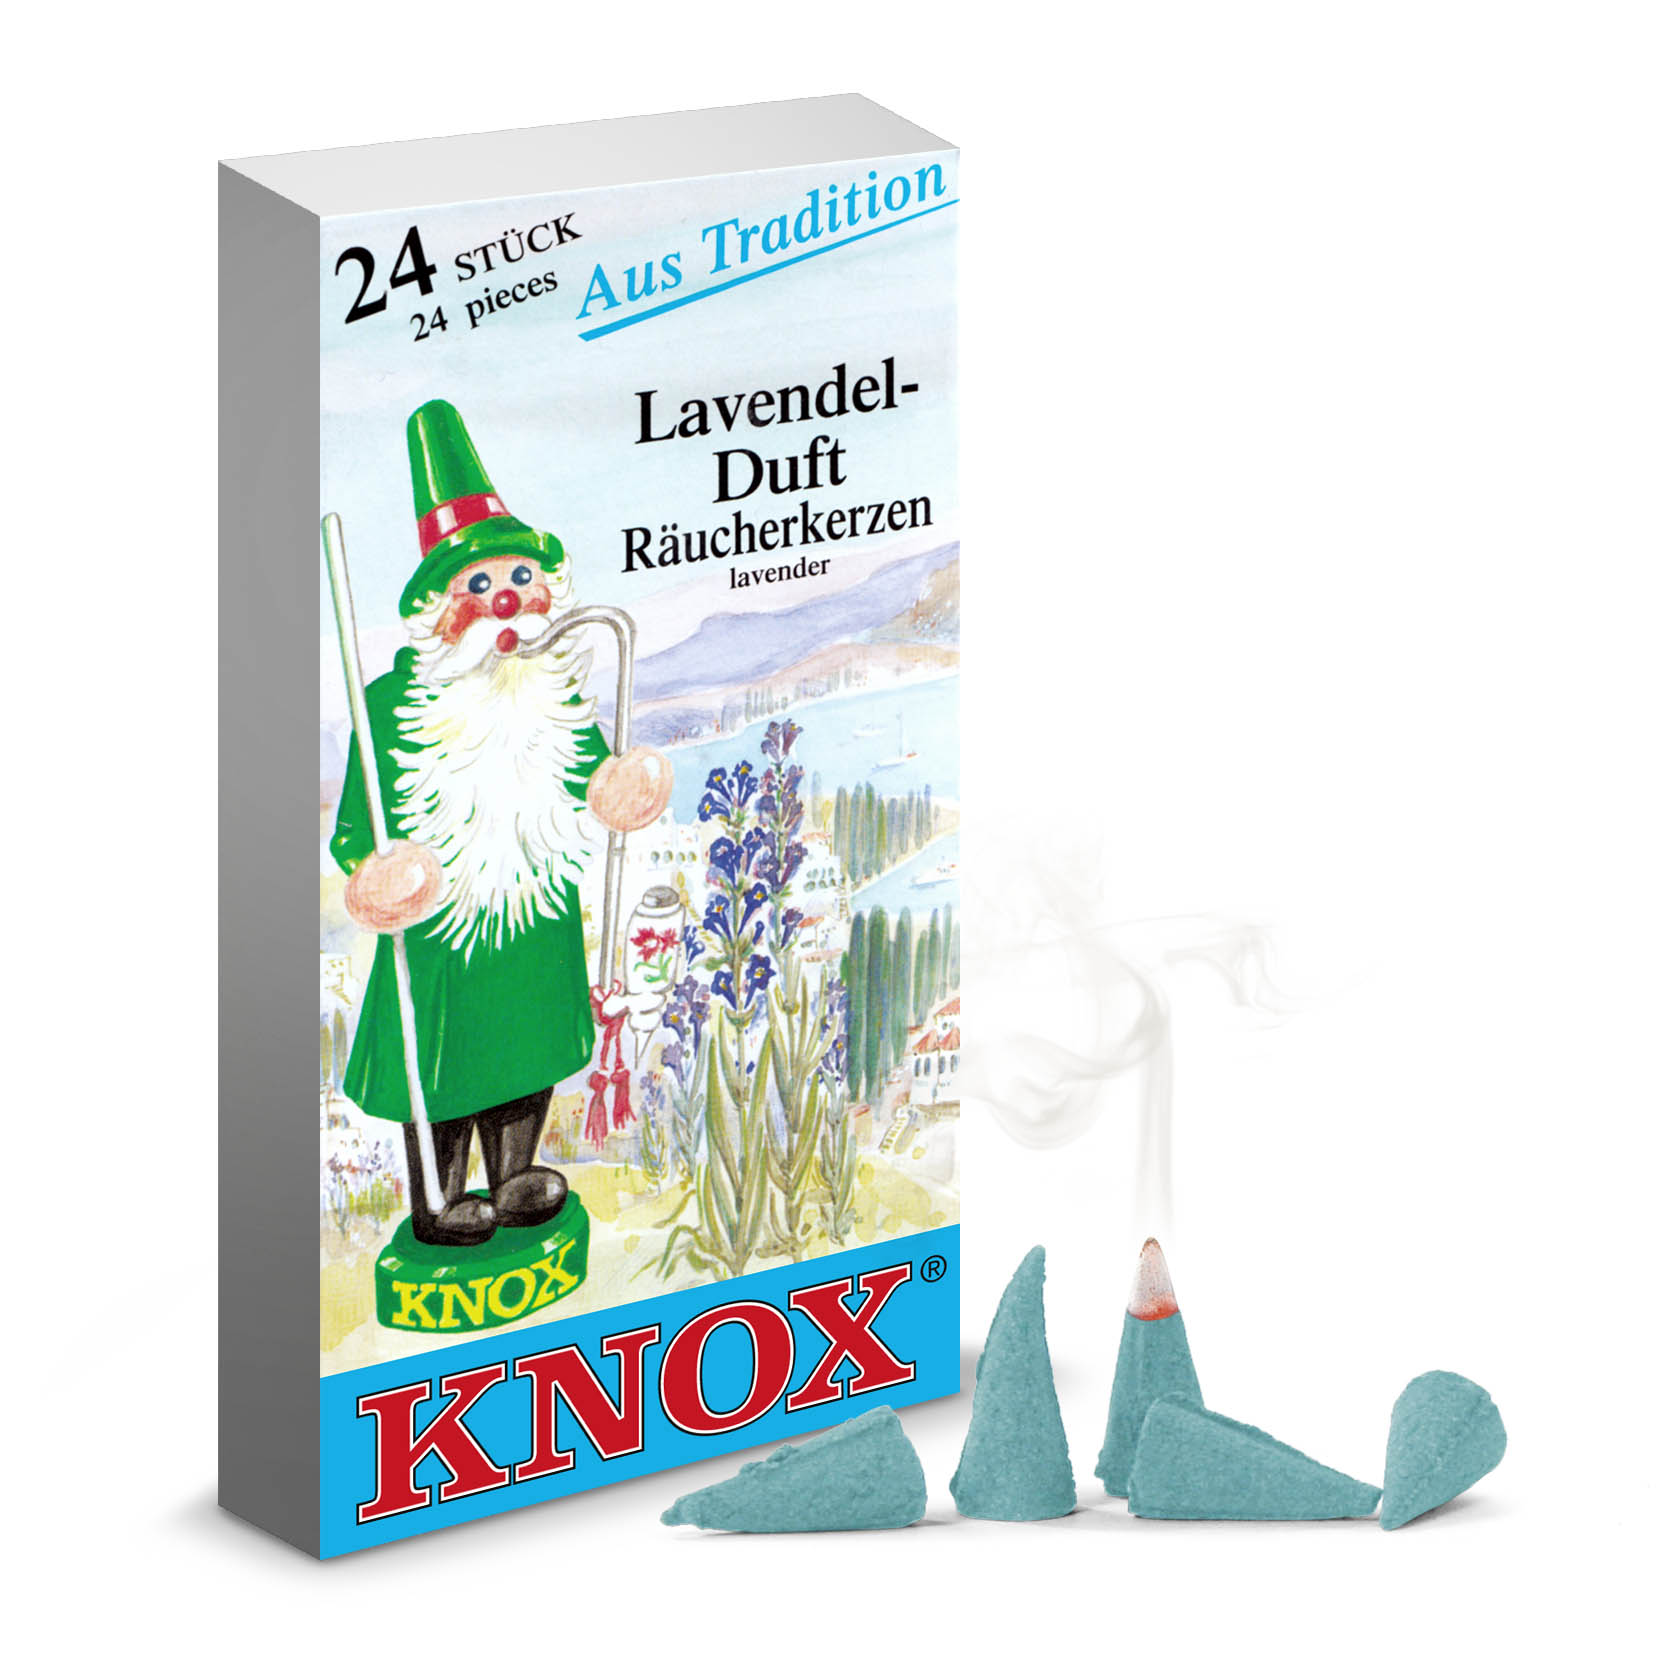 KNOX Räucherkerzen Lavendel (24) im Dregeno Online Shop günstig kaufen